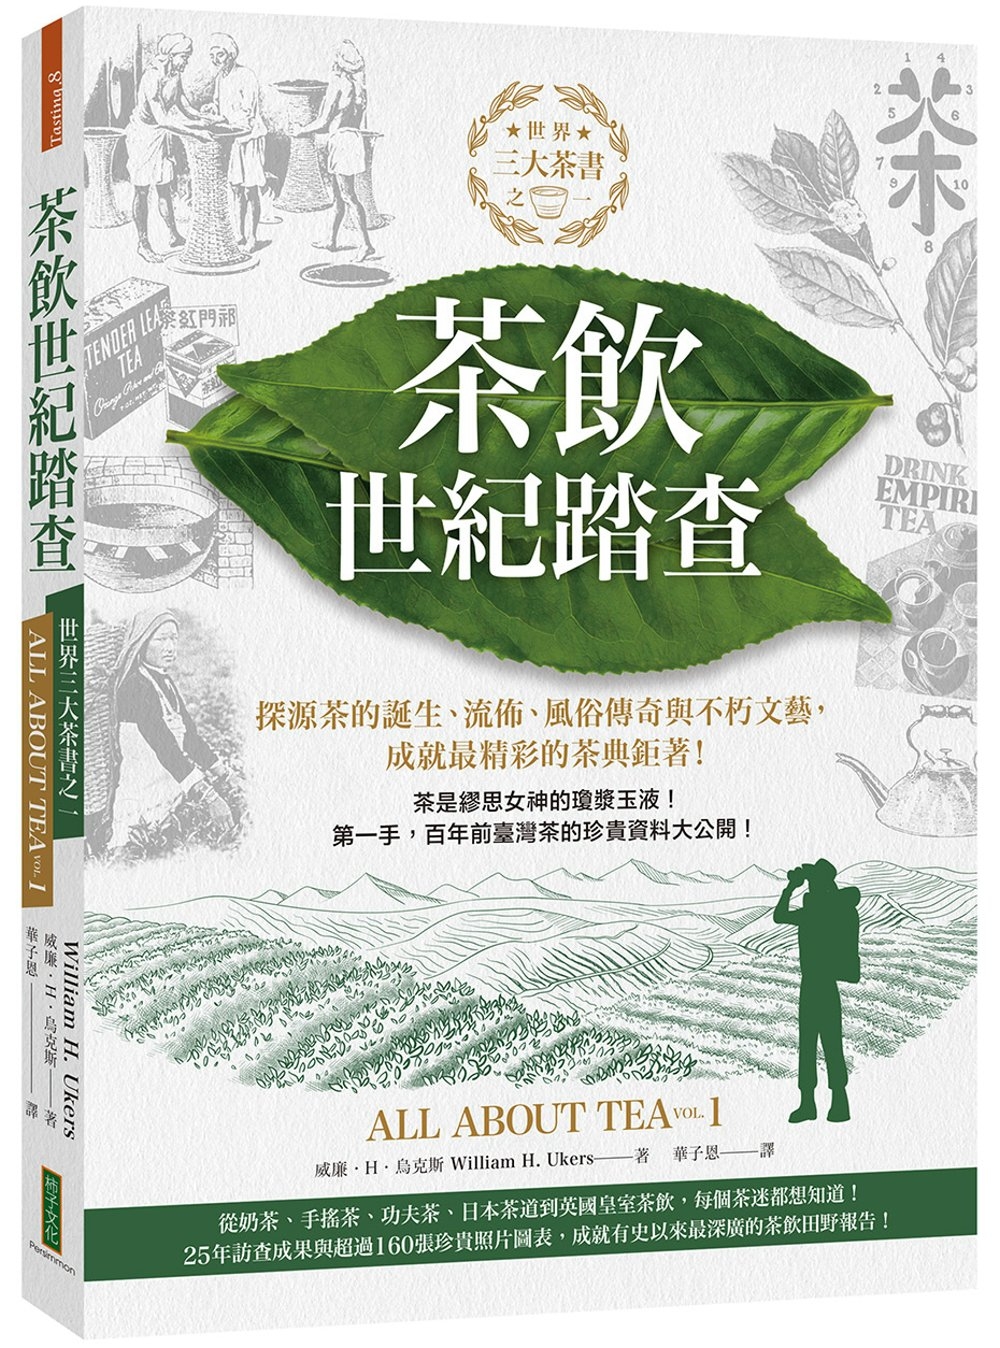 茶飲世紀踏查：三大茶書之一，探源茶的誕生、流佈、風俗傳奇與不朽文藝，成就最精彩的茶典鉅著！